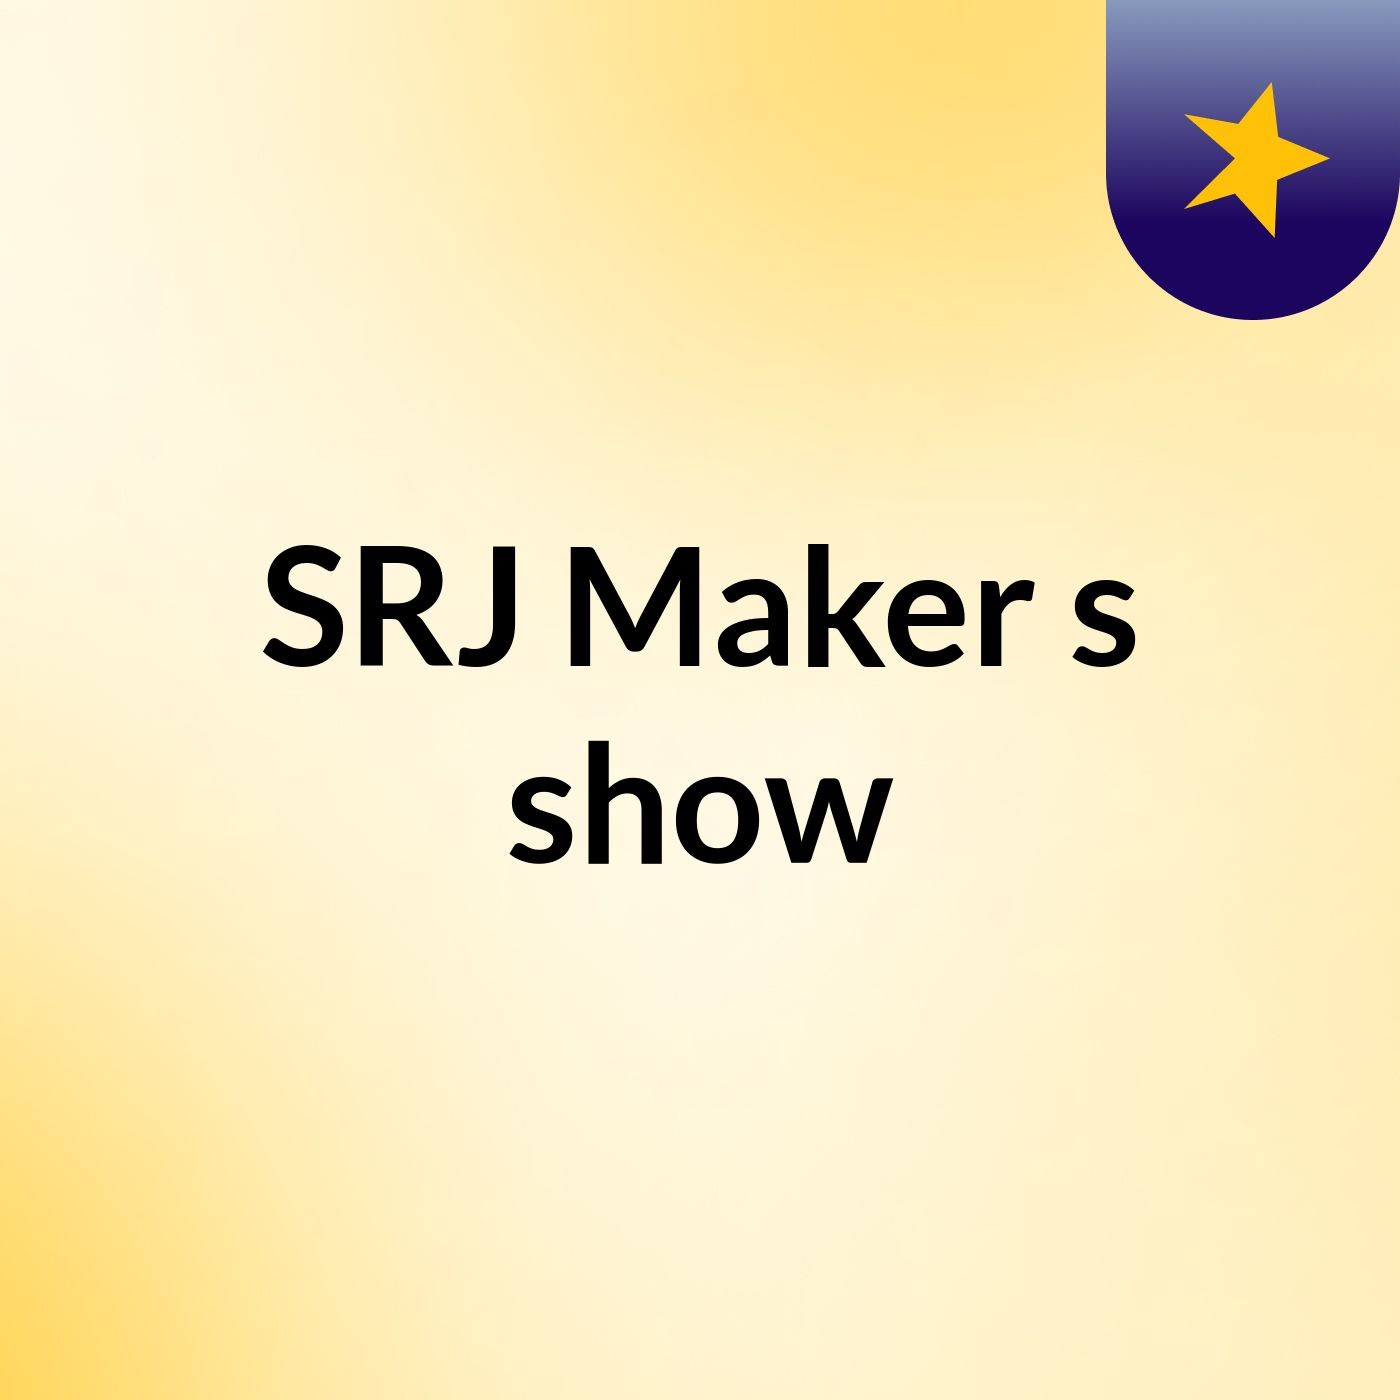 SRJ Maker's show